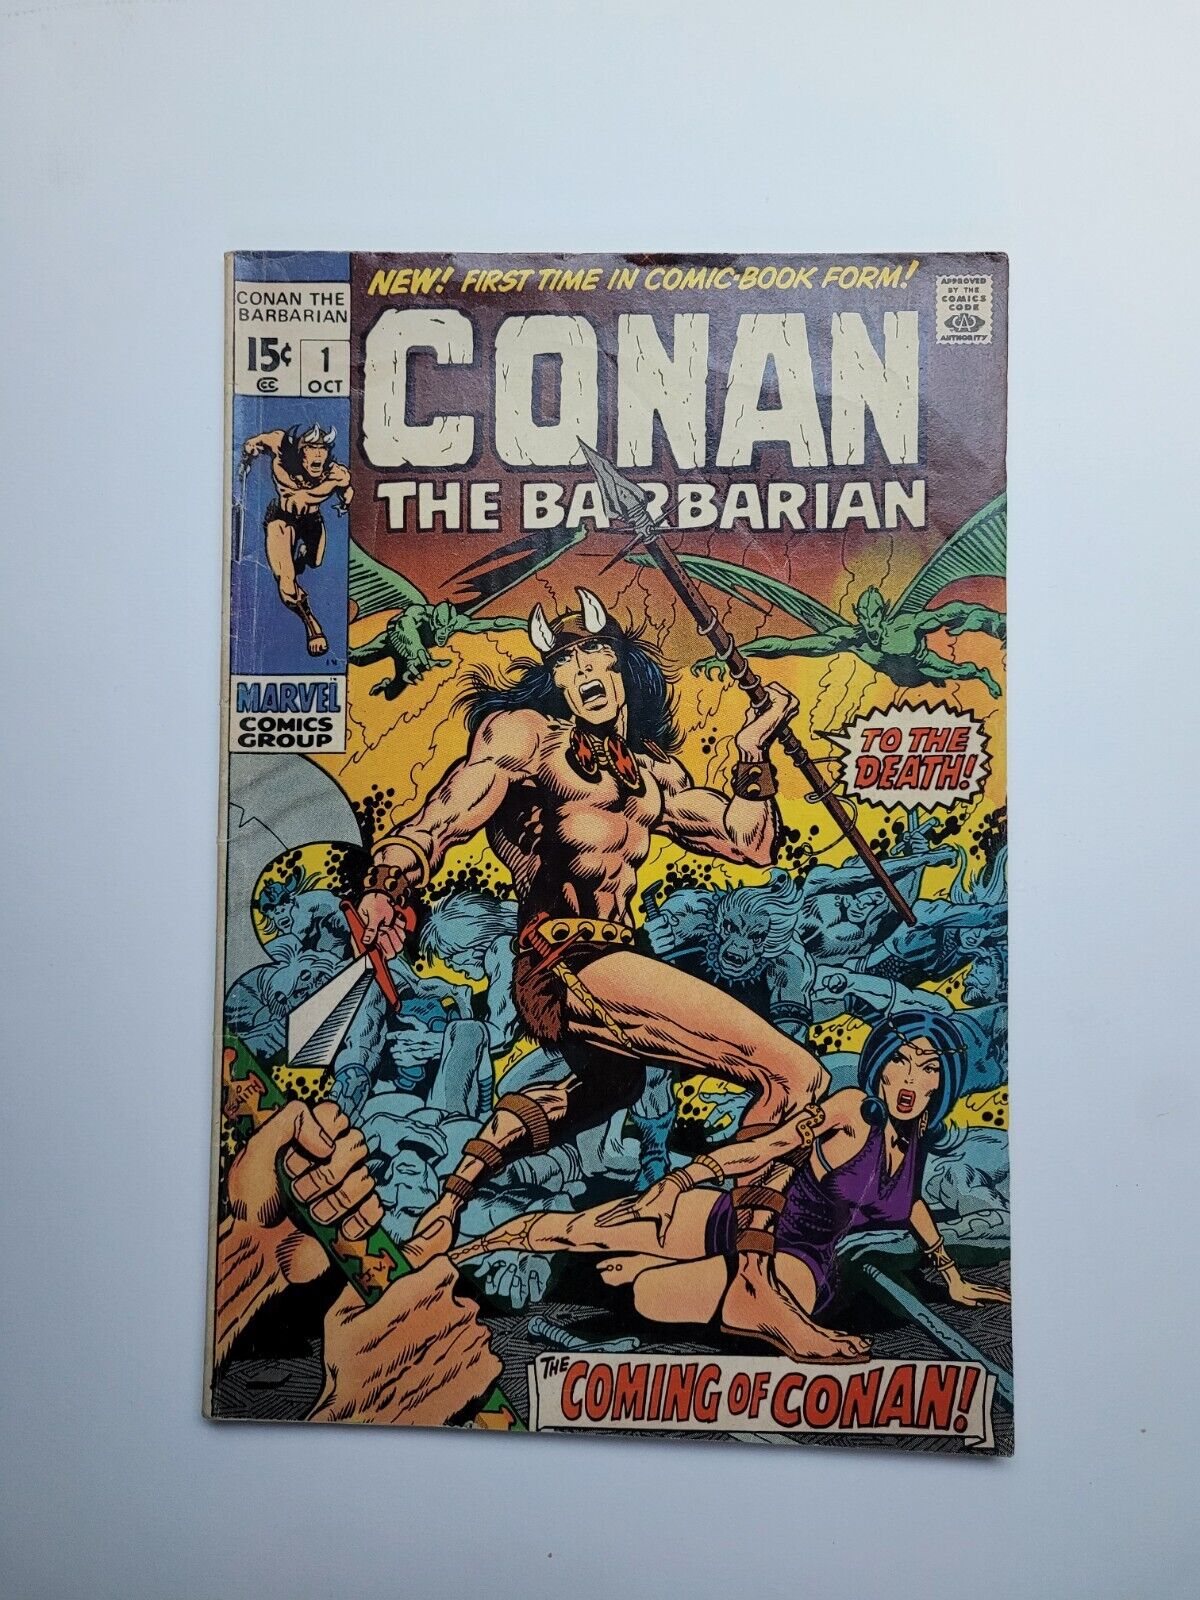 Conan the Barbarian #1 - The Coming of Conan - Marvel 1970 - VG+